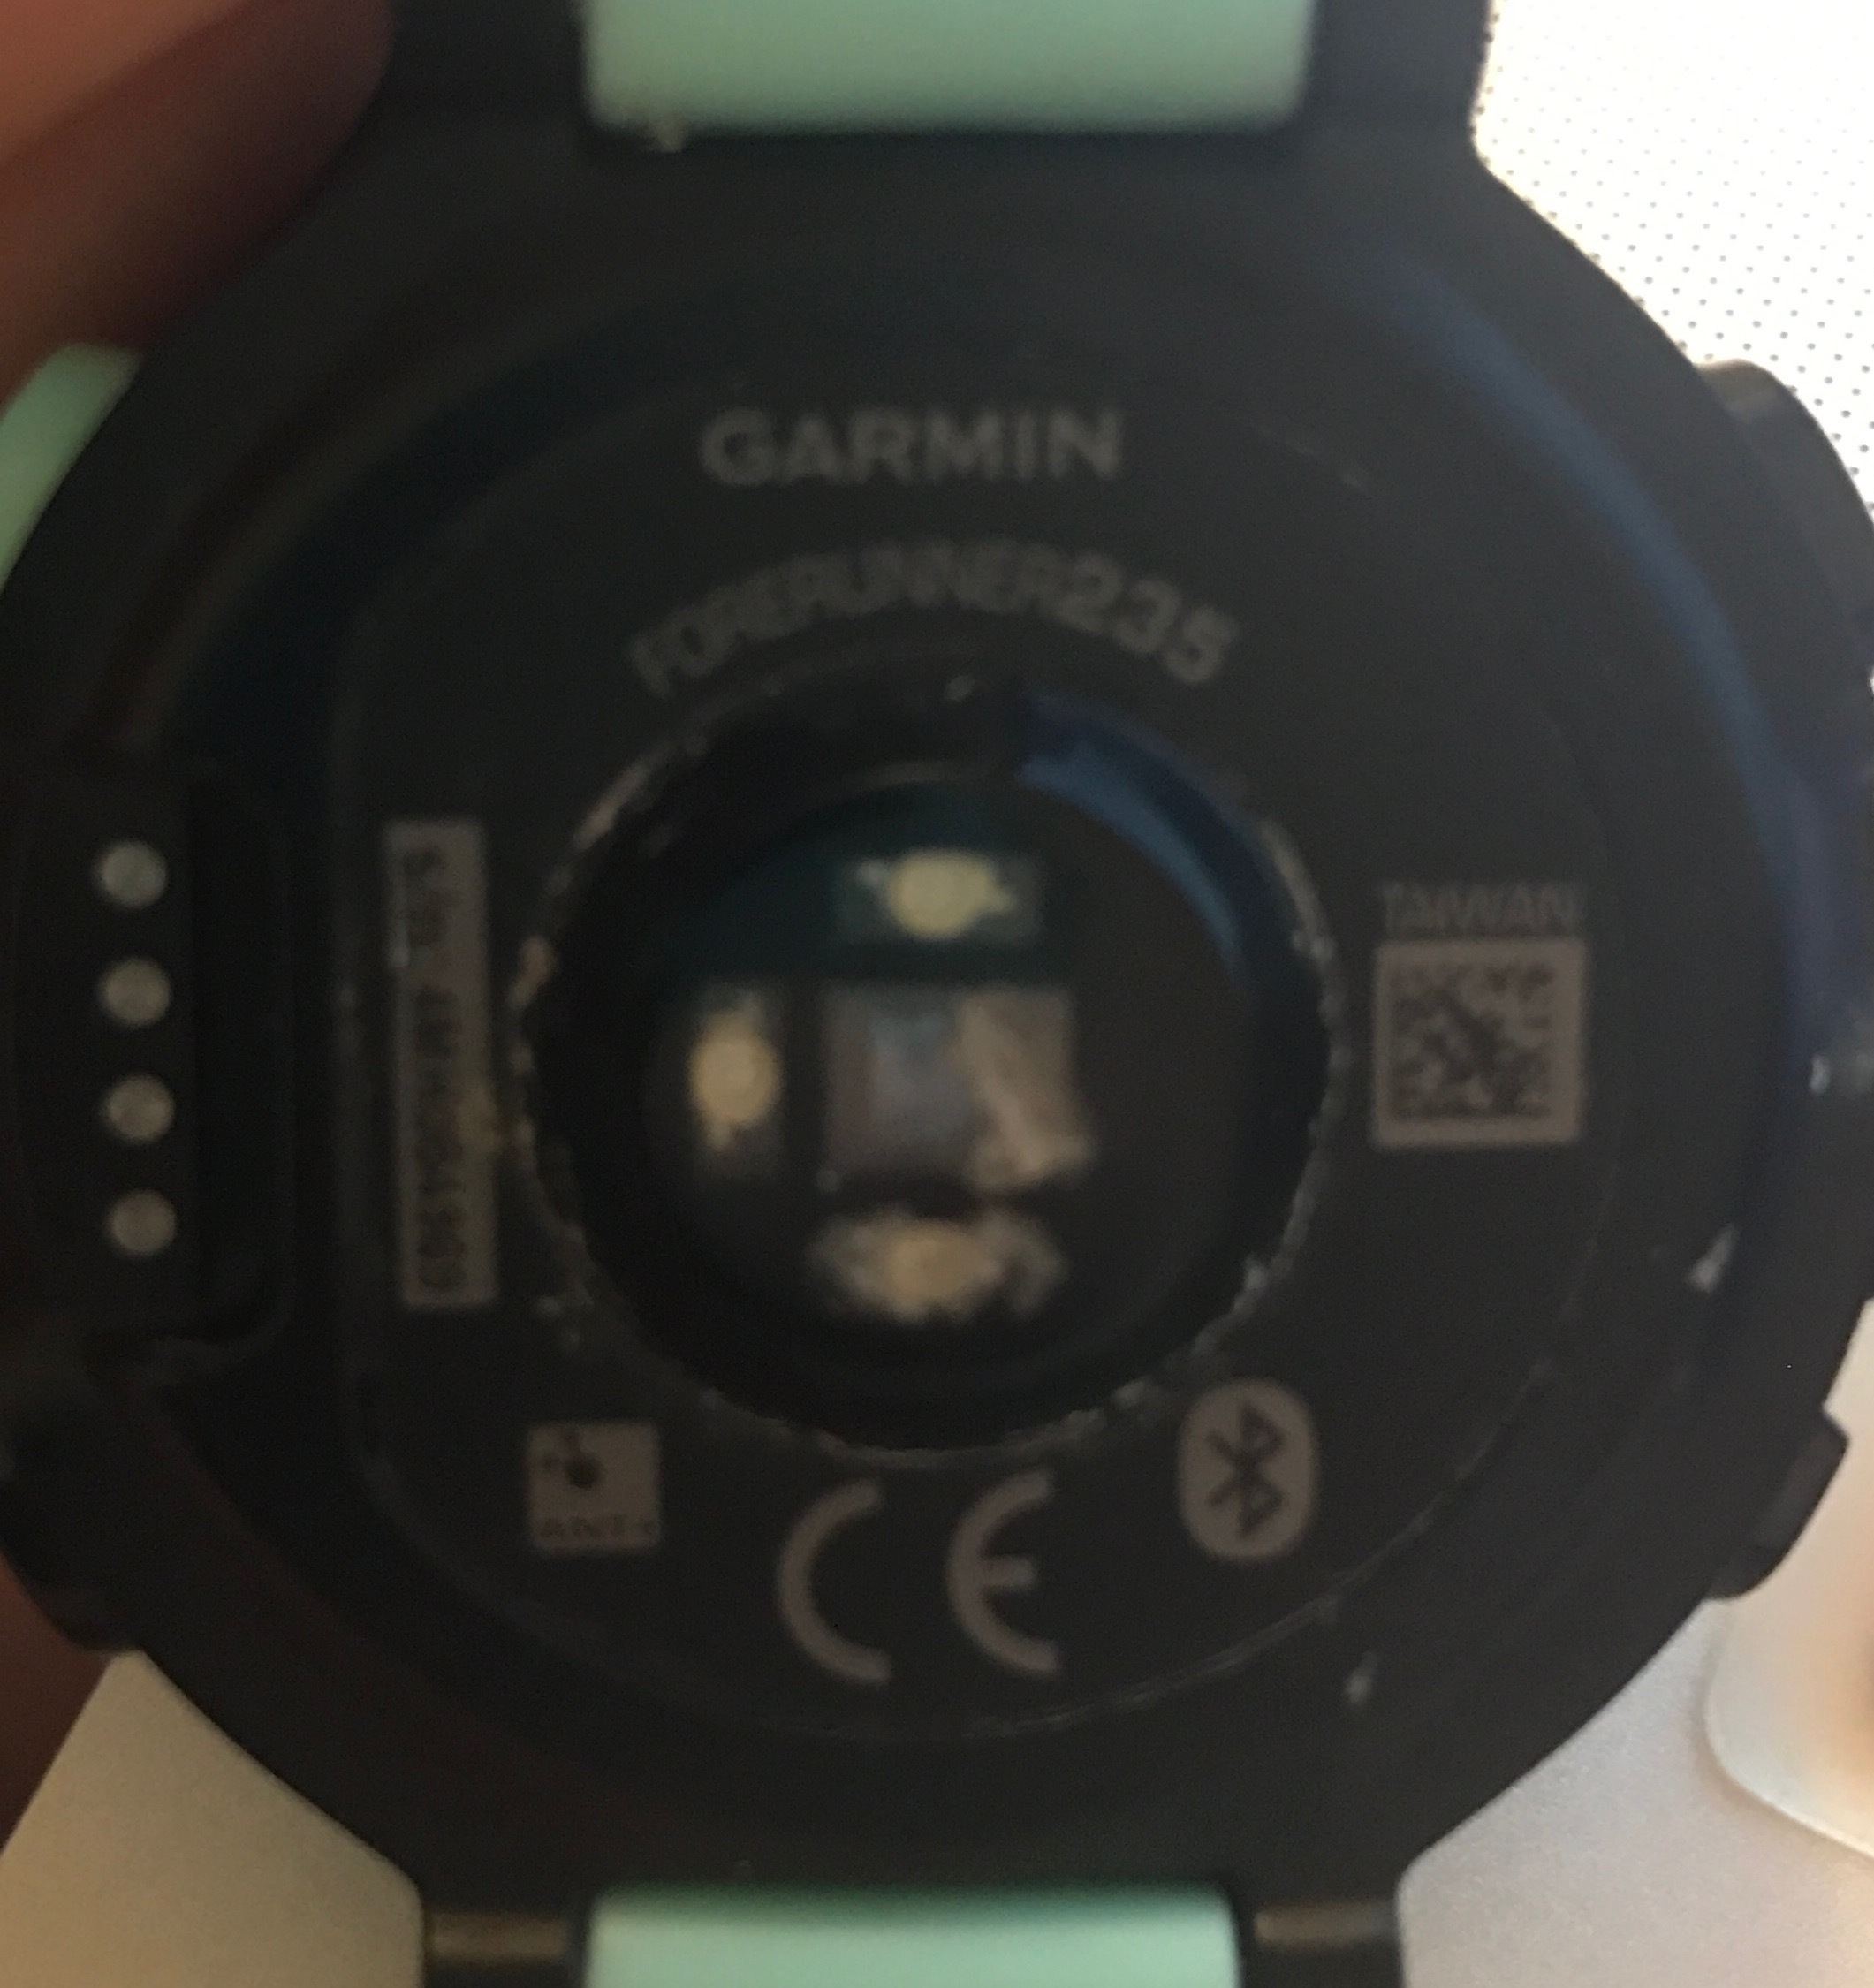 garmin 235 heart rate monitor